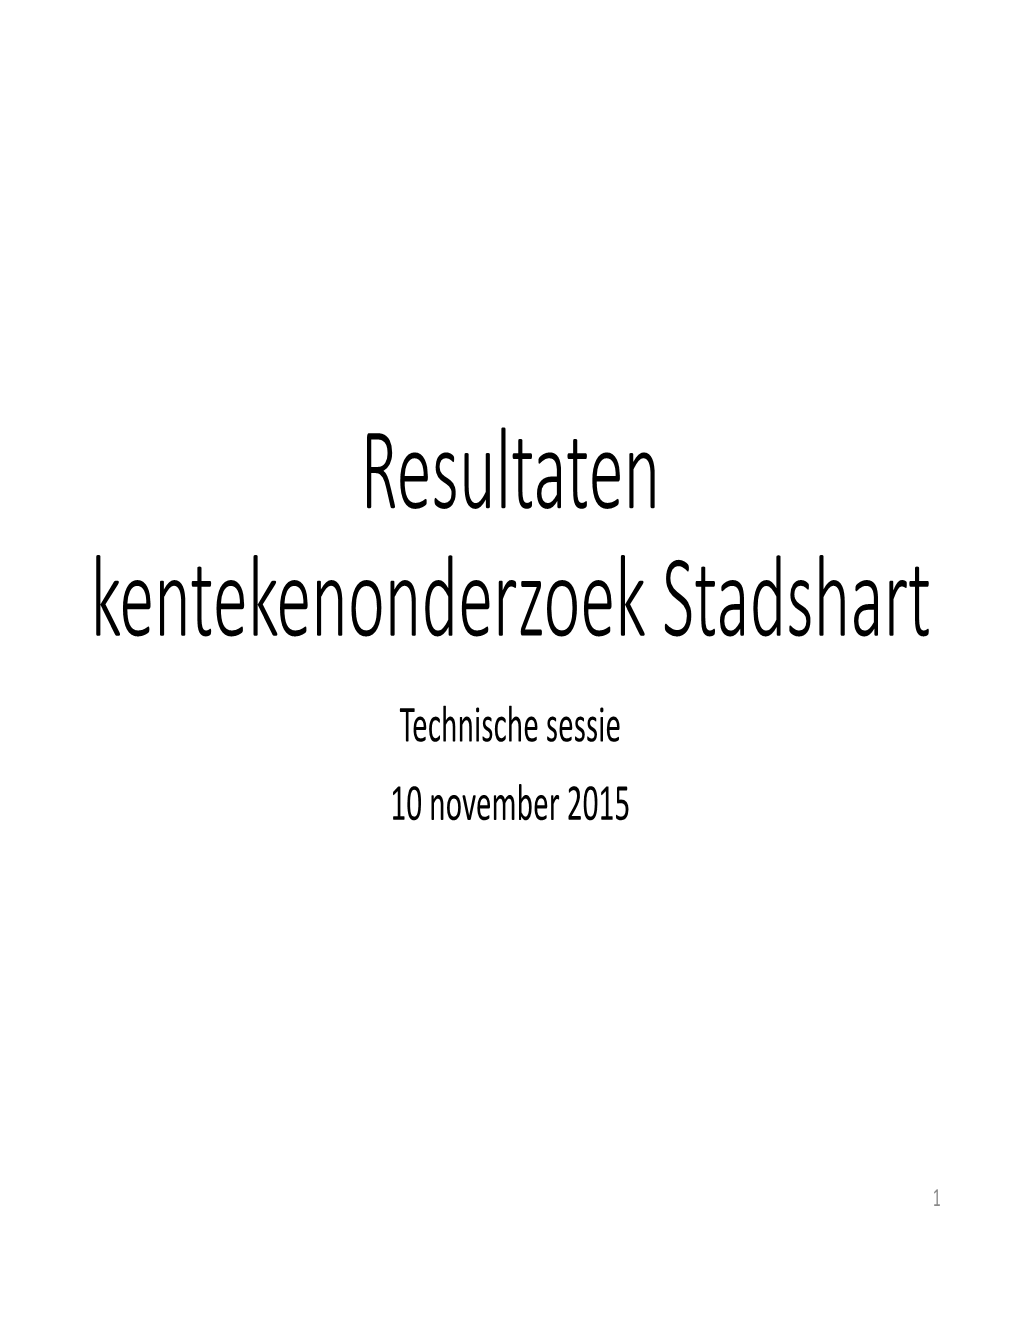 Resultaten Kentekenonderzoek Stadshart Technische Sessie 10 November 2015